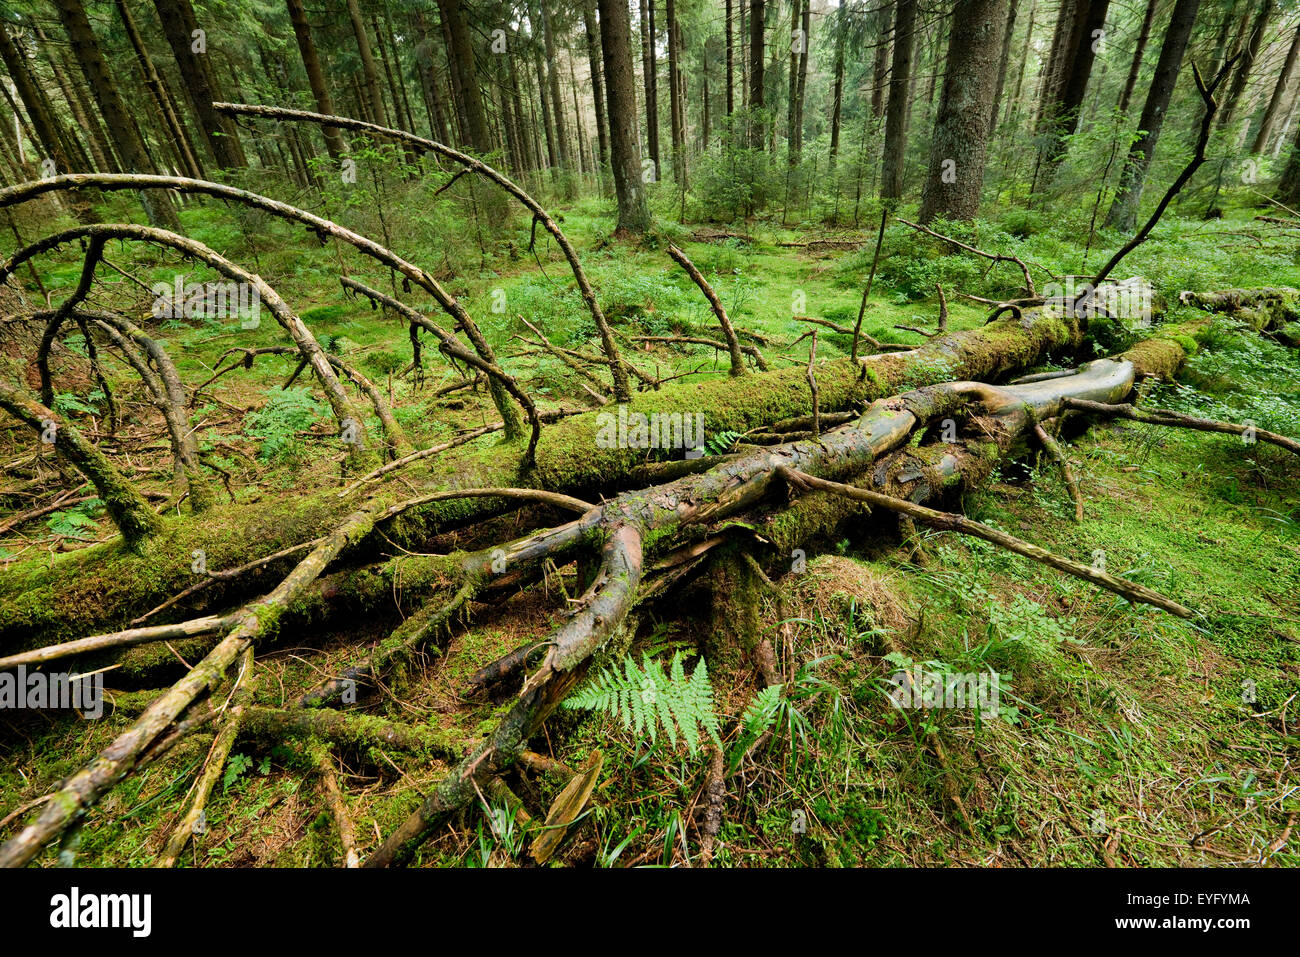 Le bois mort dans la forêt d'épinettes primitive, l'épinette de Norvège (Picea abies), Parc National de Harz, Basse-Saxe, Allemagne Banque D'Images